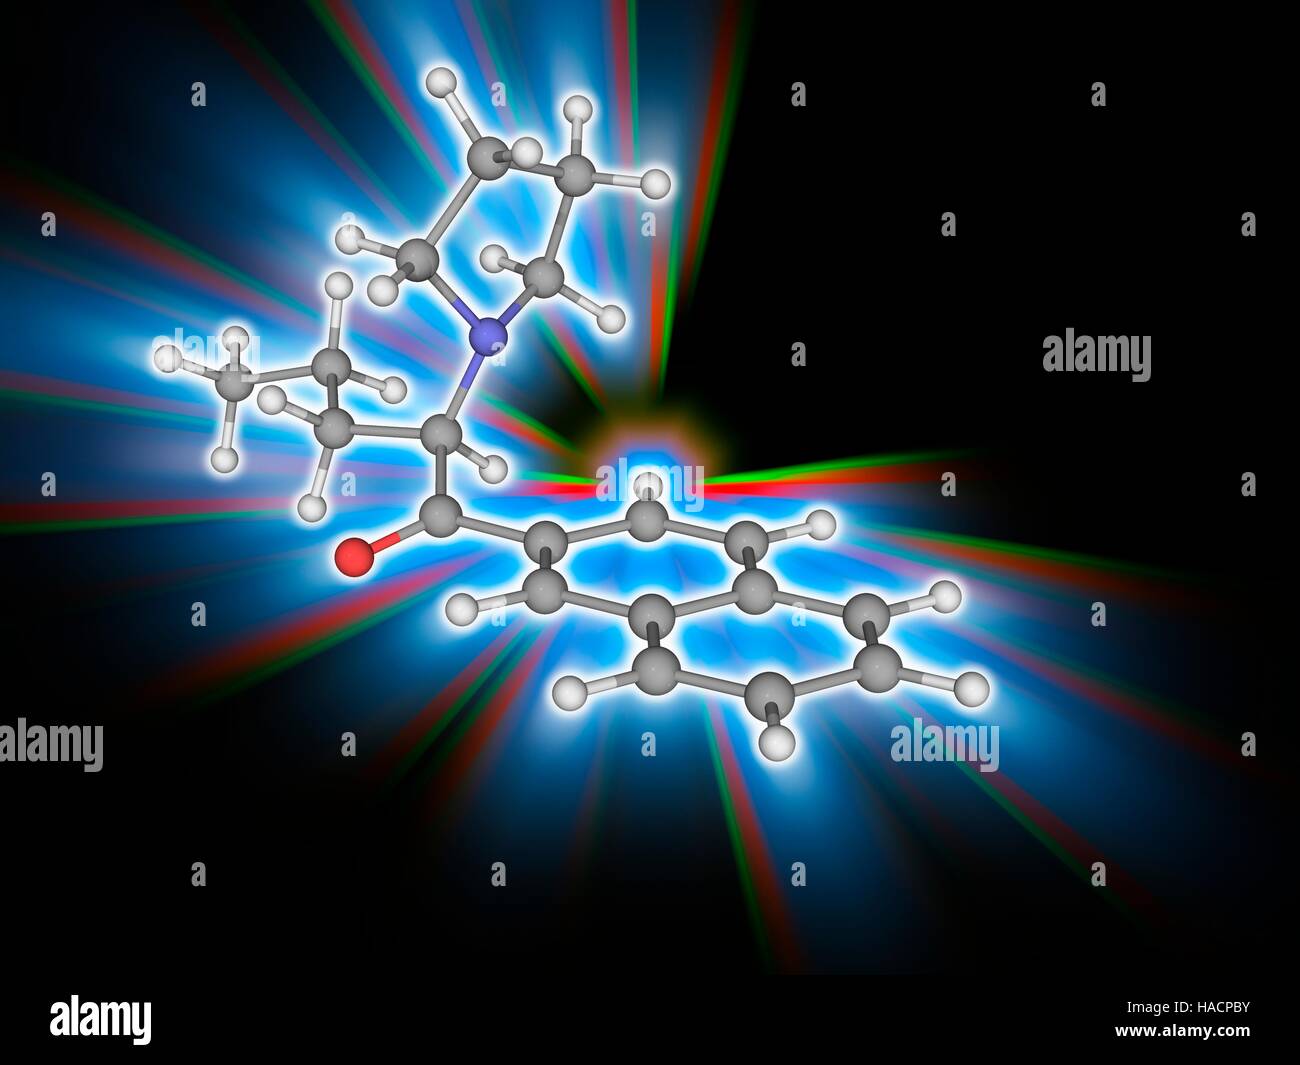 Naphyrone. Molekulares Modell des Medikaments Naphyrone (C19. H23. Navi), eingestuft als ein Cathinon, eine Pyrrolidinophenone und eine Naphthalin. Es fungiert als eine dreifache Reuptake Hemmer stimulierende Effekte zu produzieren. Atome als Kugeln dargestellt werden und sind farblich gekennzeichnet: Kohlenstoff (grau), Wasserstoff (weiß), Stickstoff (blau) und Sauerstoff (rot). Abbildung. Stockfoto